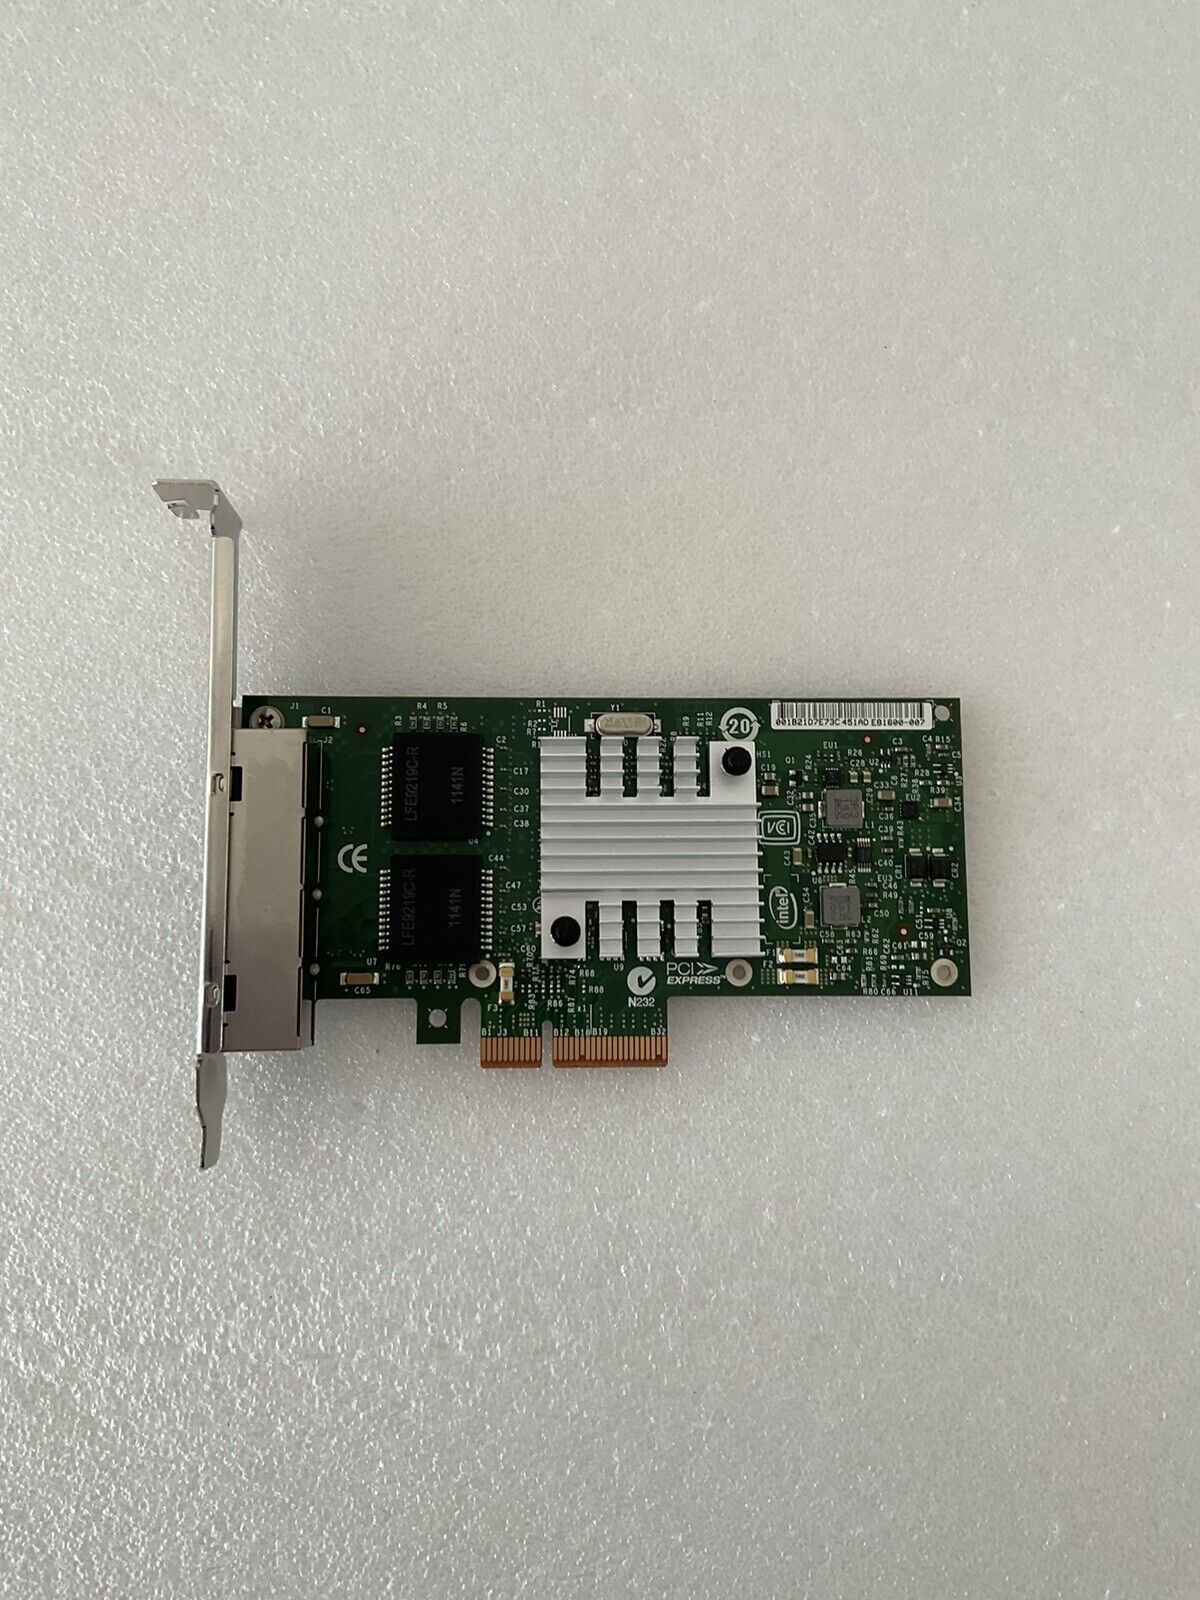 Intel I340-T4 Gigabit ET Quad Port Server Adapter Card Full Height